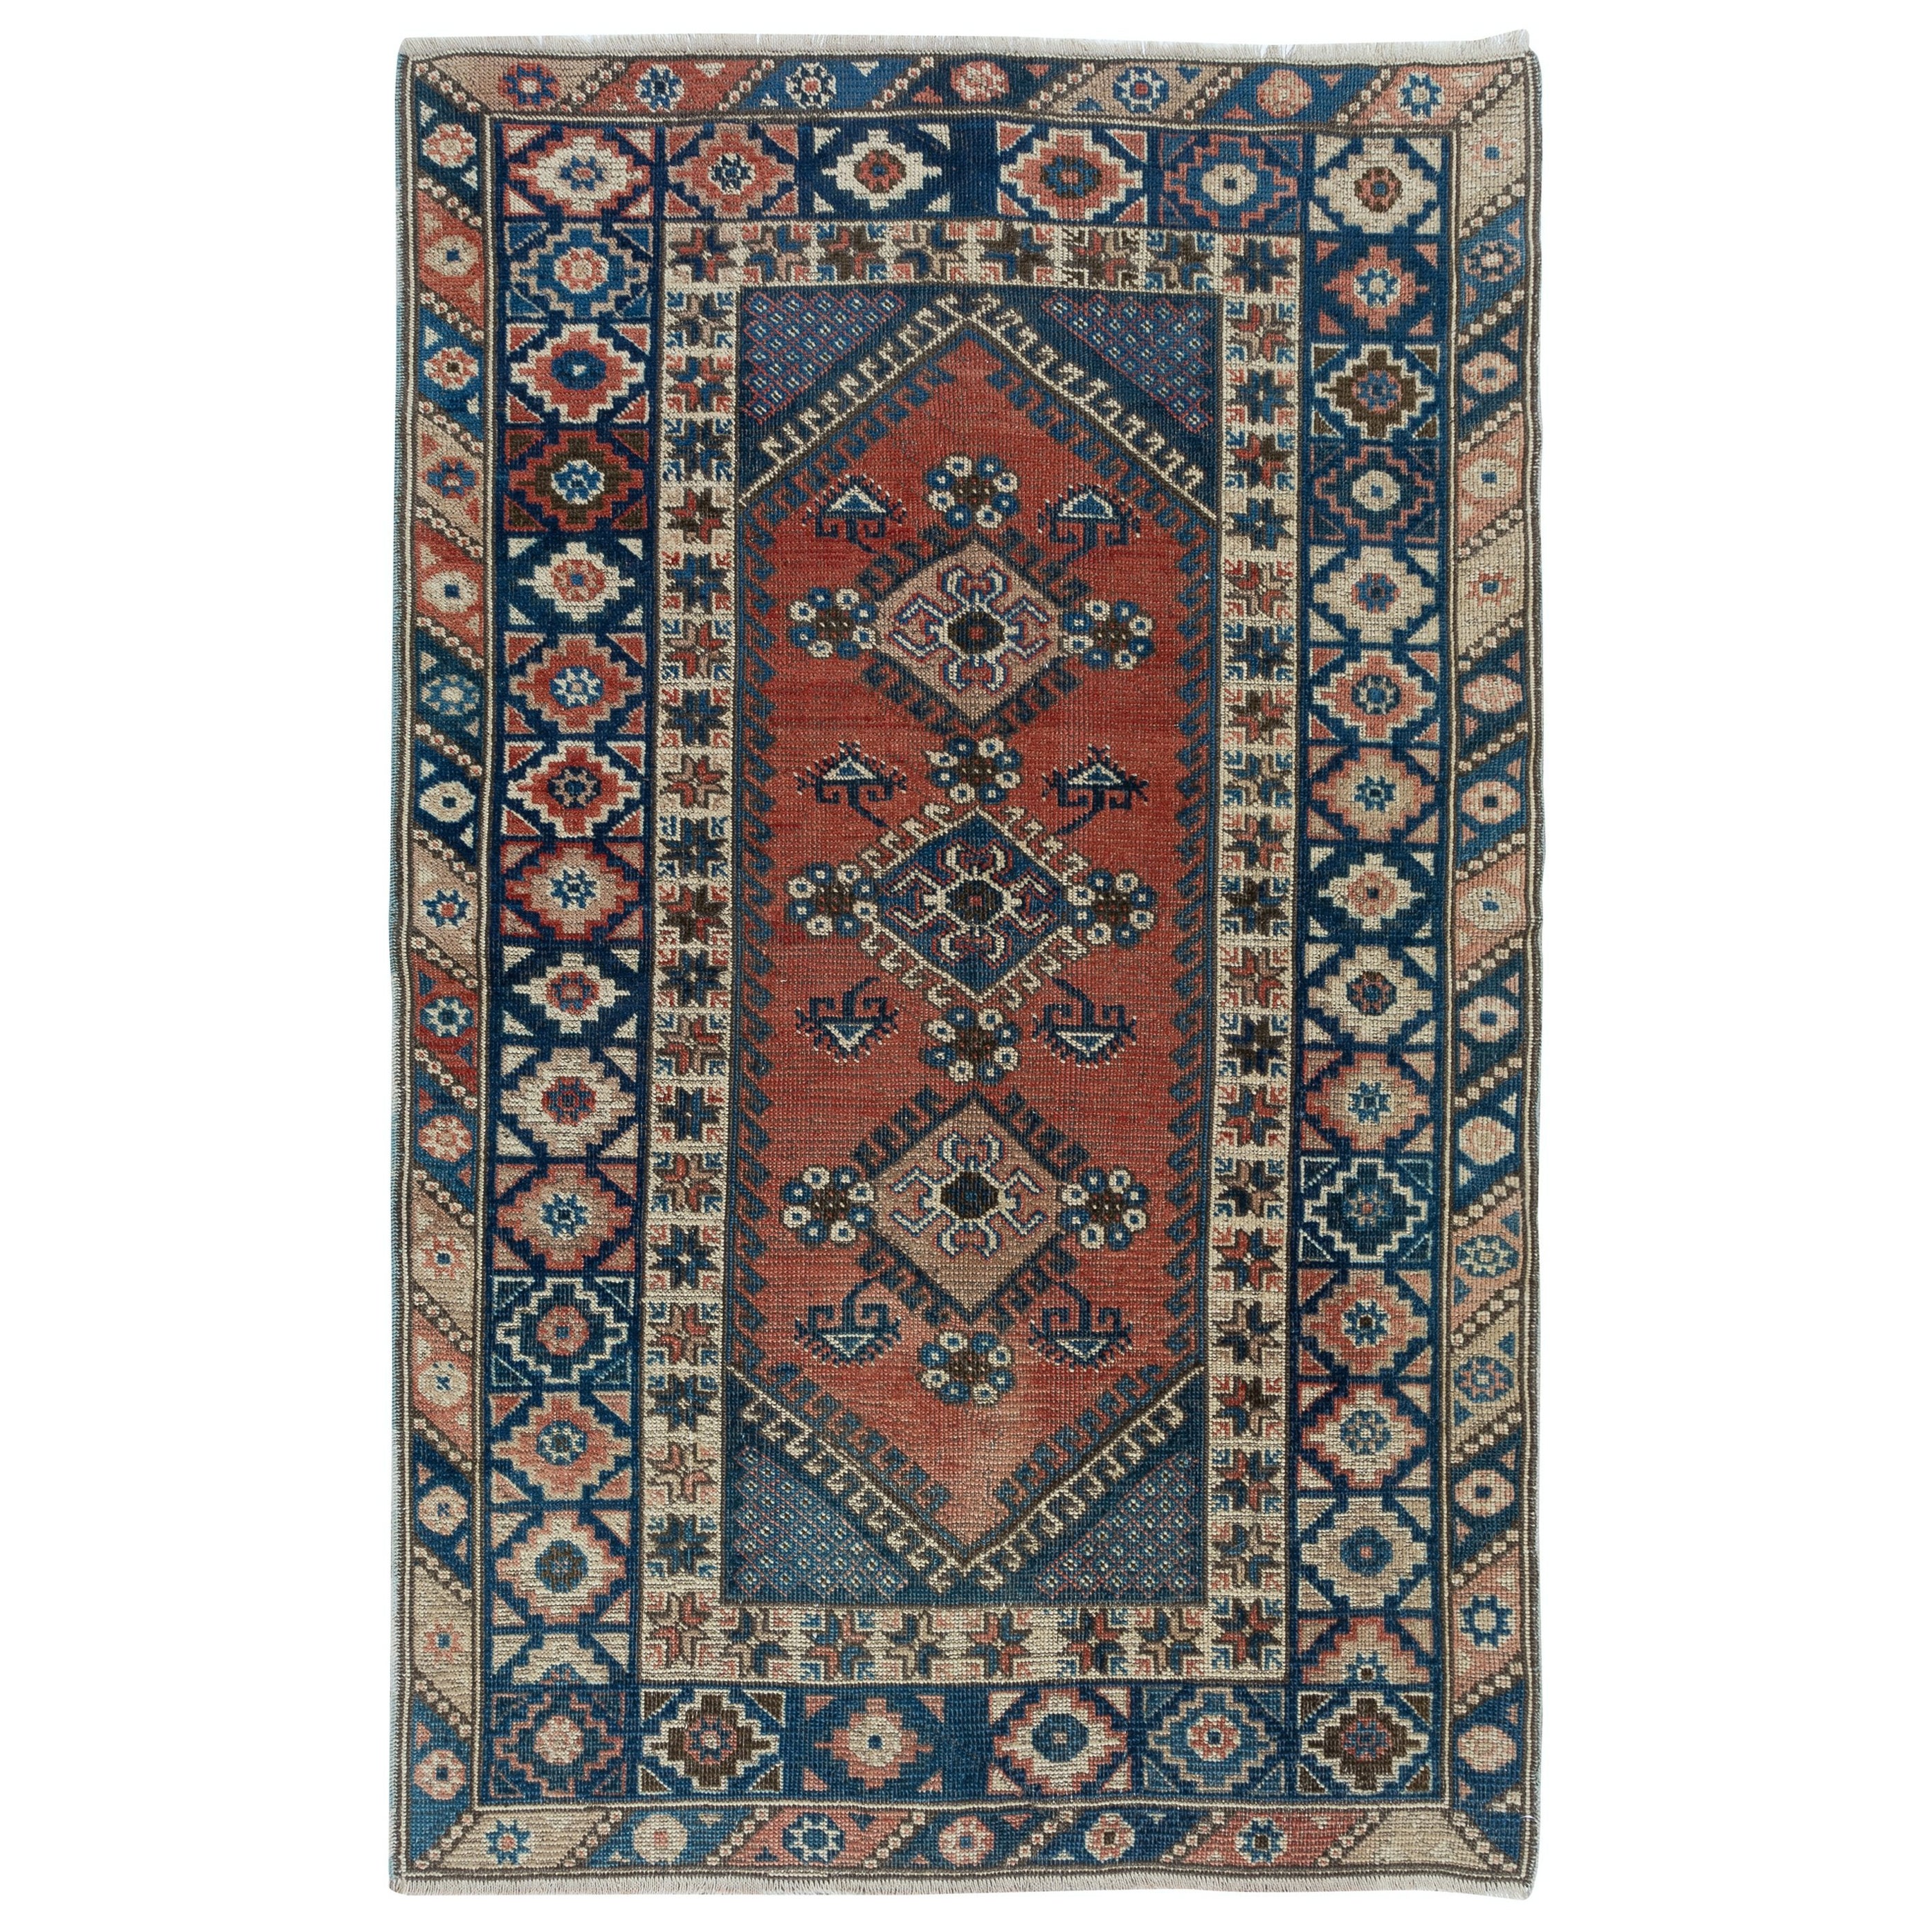 4x6 Ft Traditional Vintage Handmade Turkish Rug with Medallions, Colorful Carpet (Tapis traditionnel turc fait à la main avec des médaillons, tapis coloré)